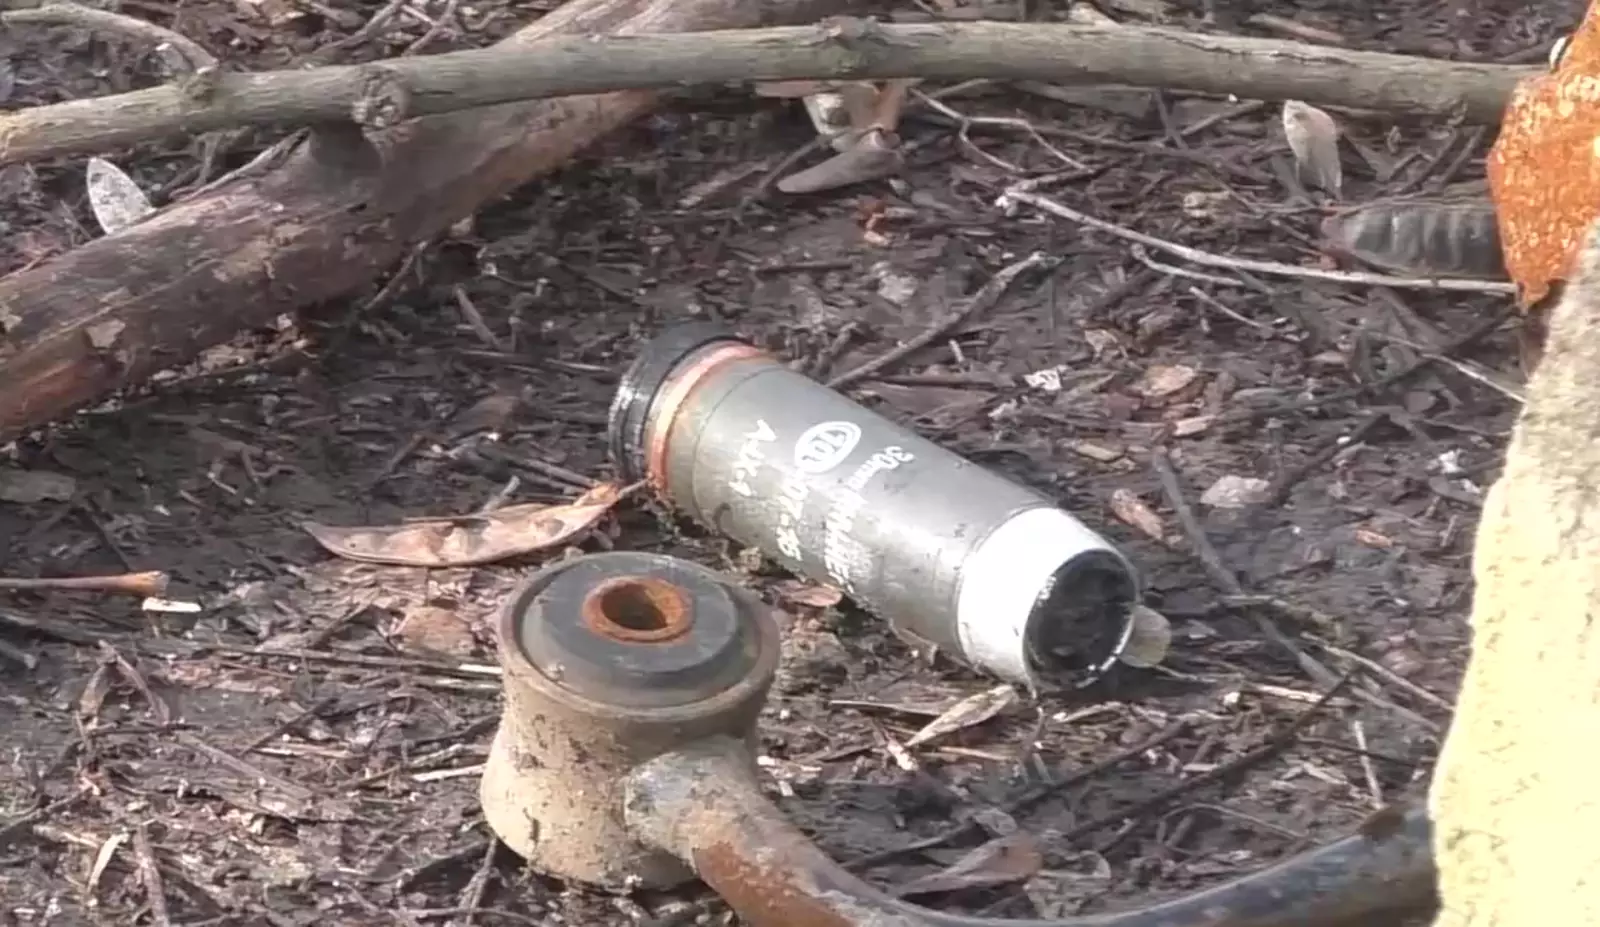 30-мм осколочно-фугасная граната RHV-HEF для автоматических гранатометов, изготовленная болгарским военным заводом "Арсенал", использовалась украинской армией во время обстрела жилых домов в Зайцево под Донецком